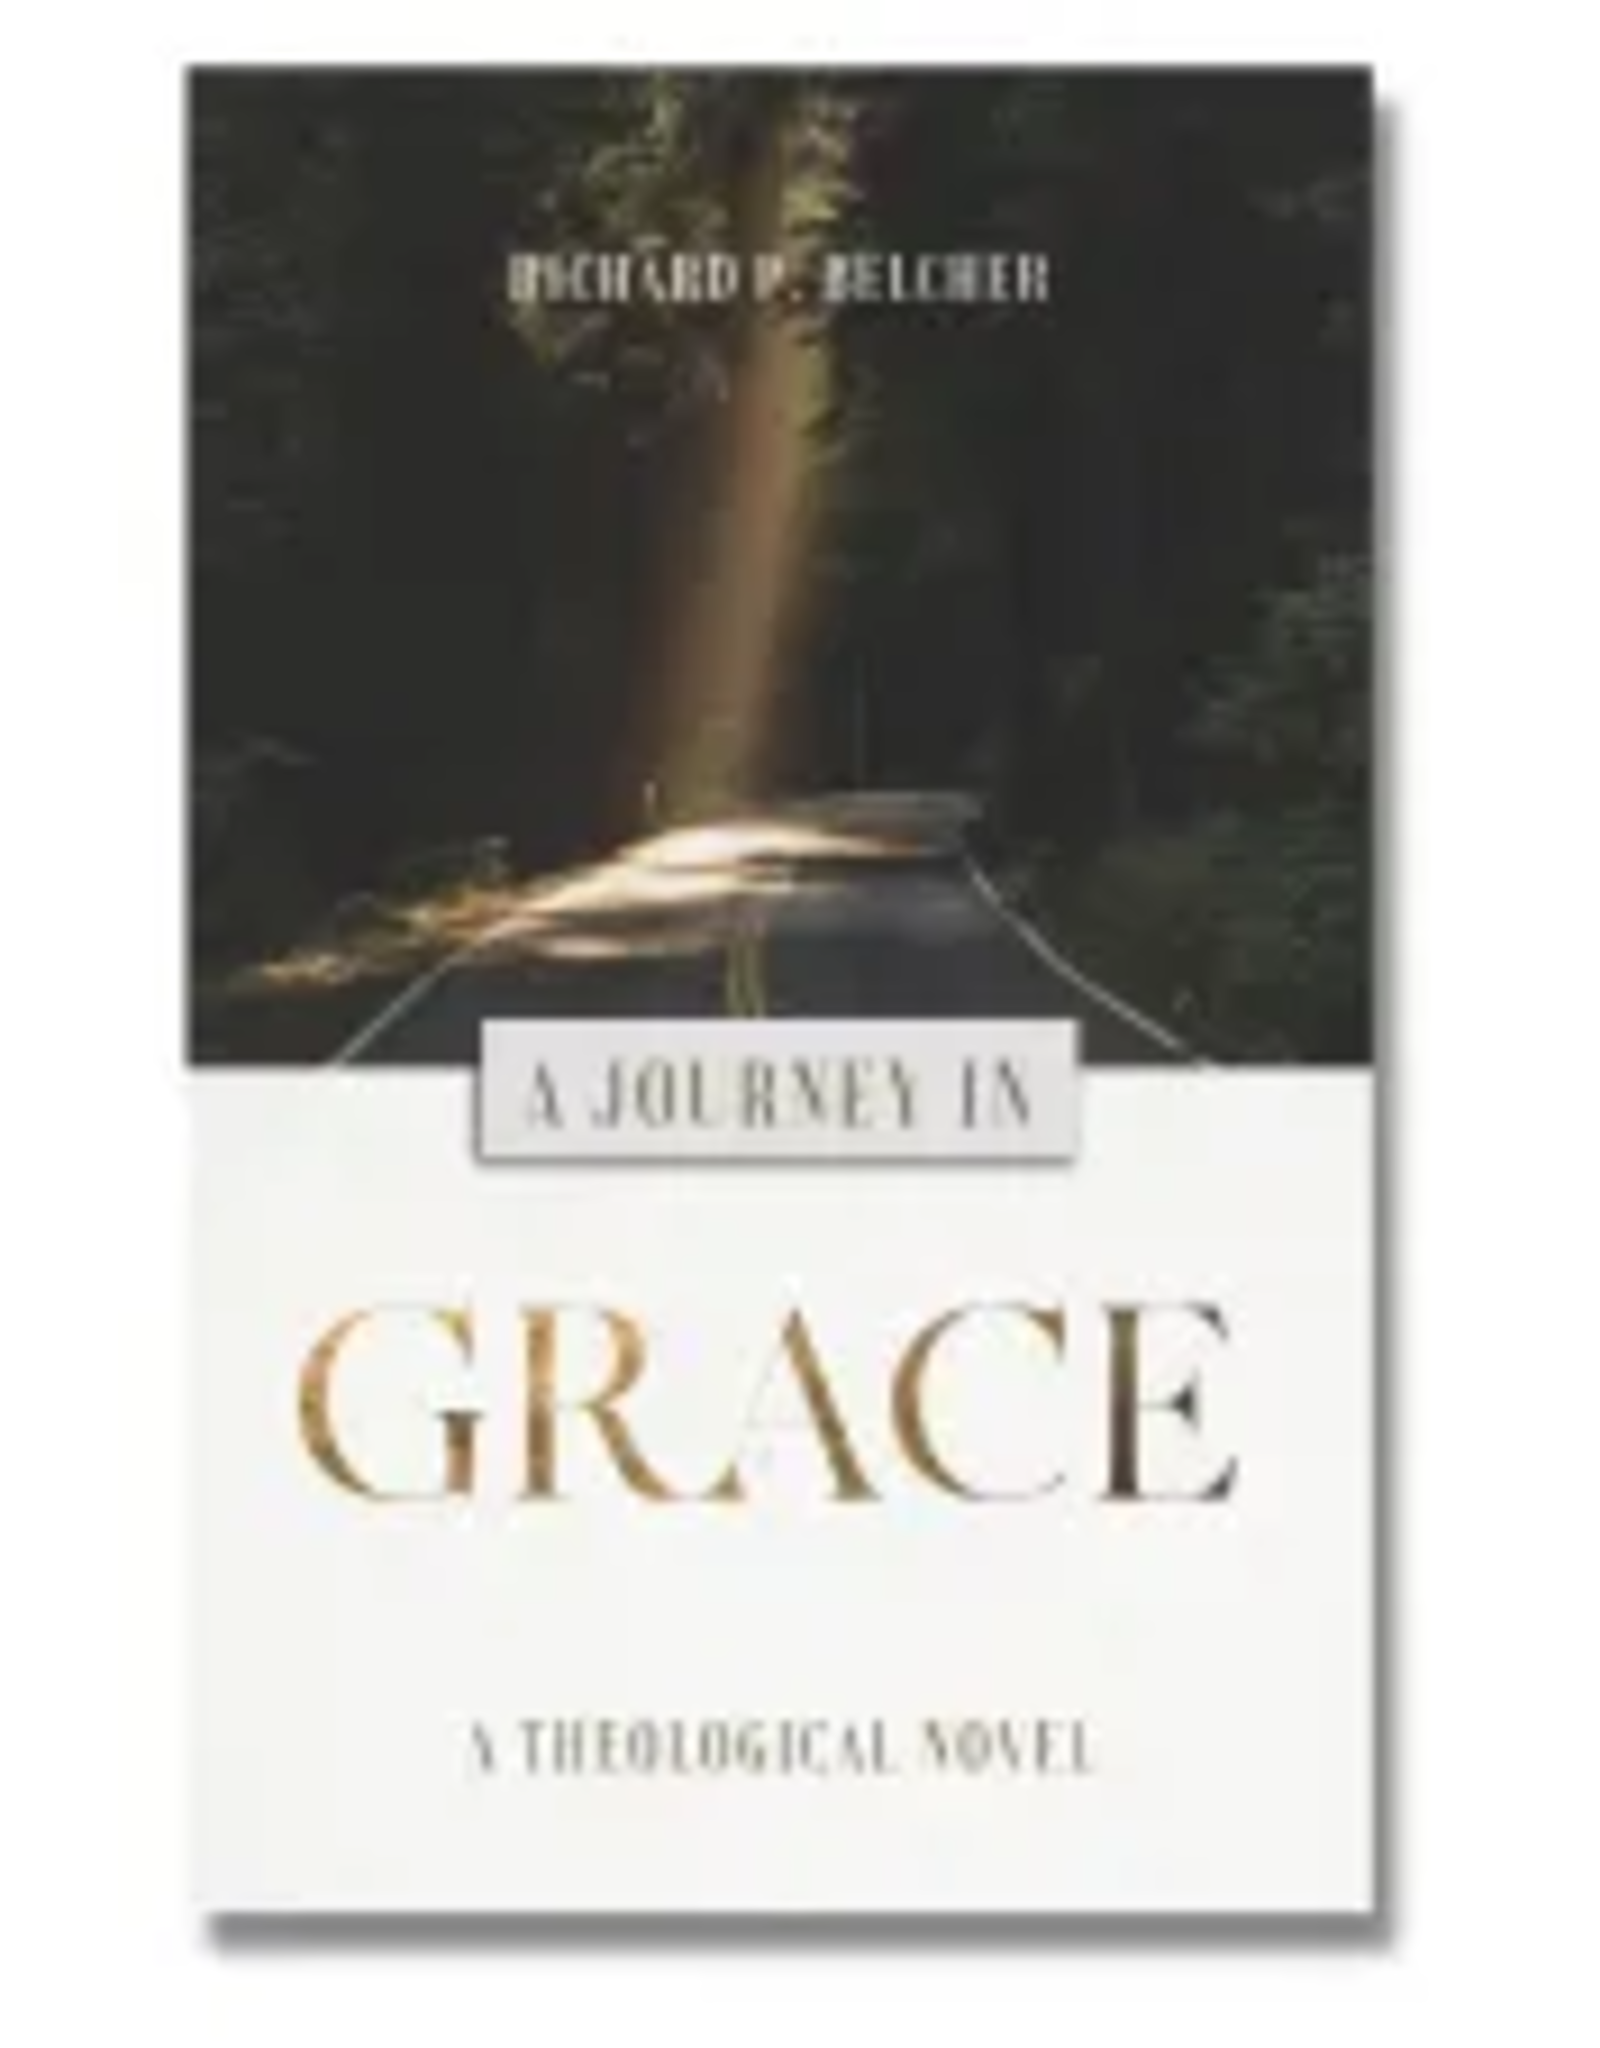 Richard P Belcher A Journey in Grace